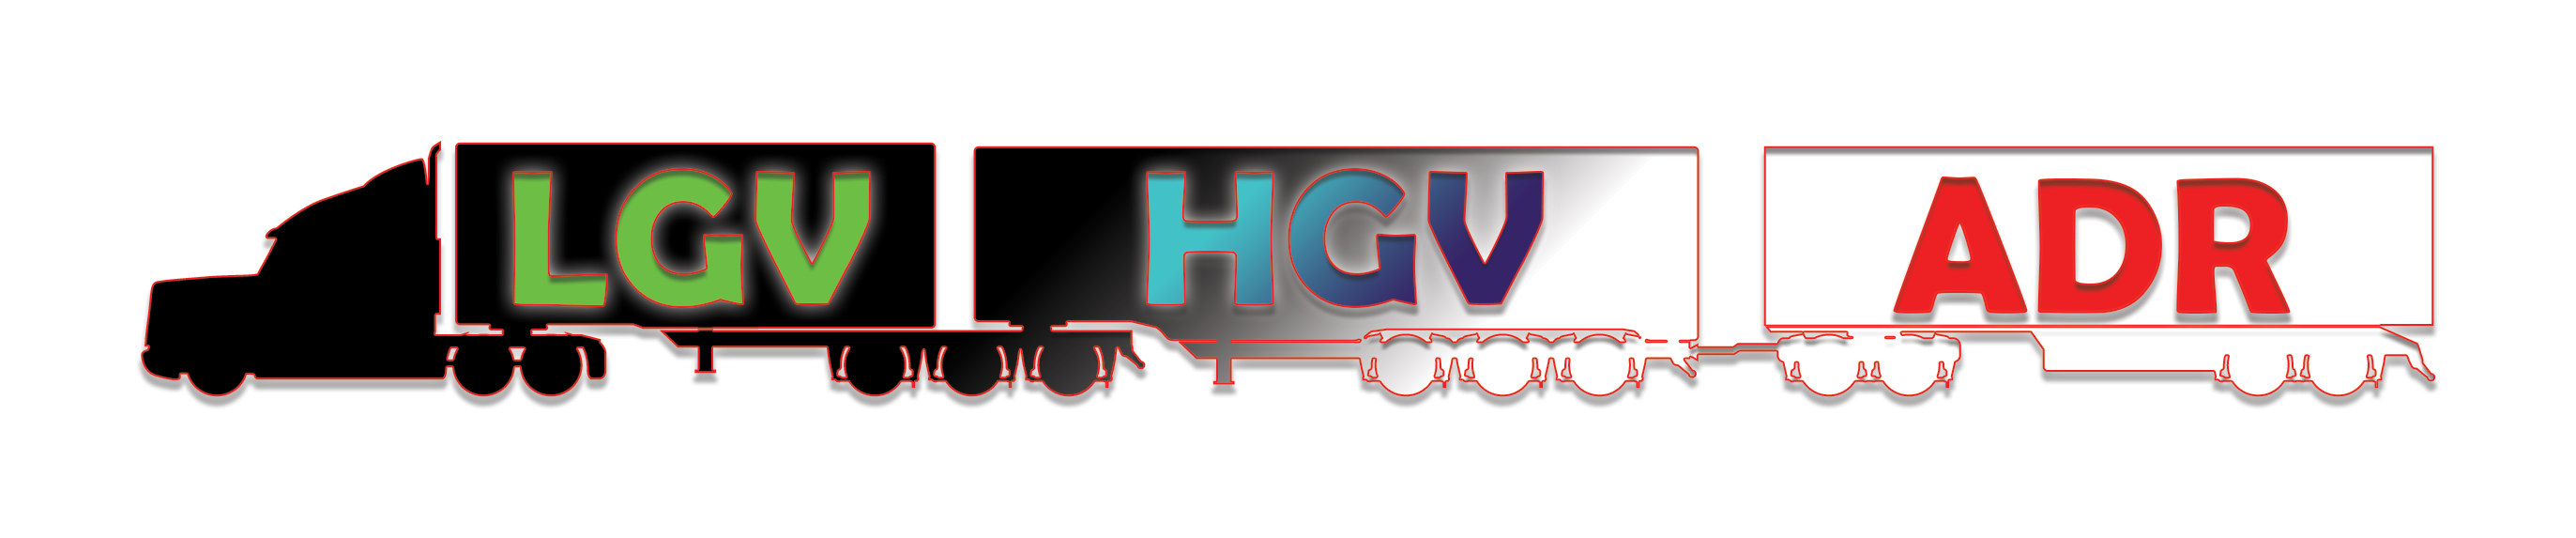 Kierowcy HGV